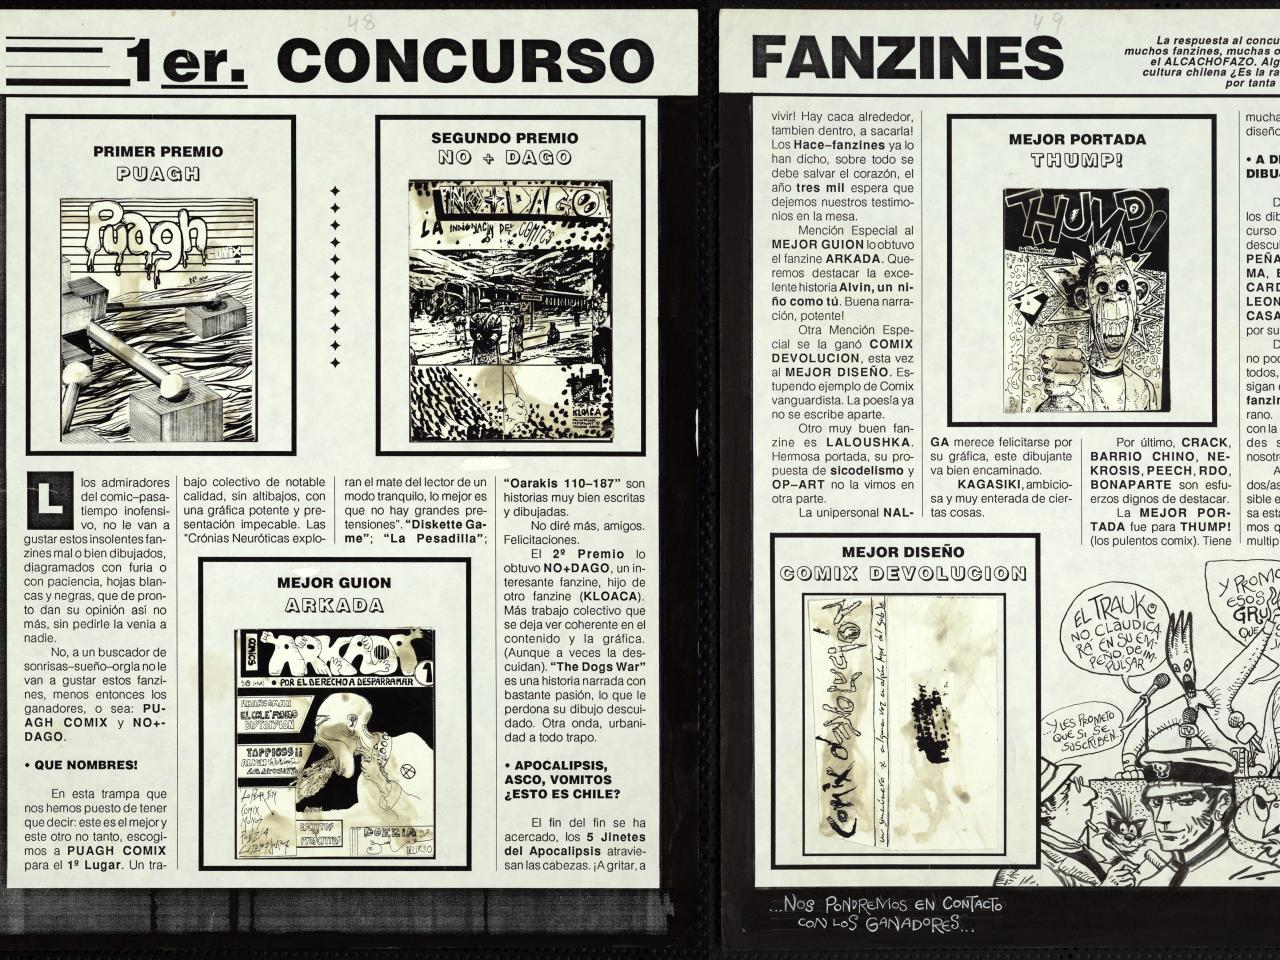 Premiados primer concurso de fanzines. Revista Trauko n° 14, pp. 48 y 49